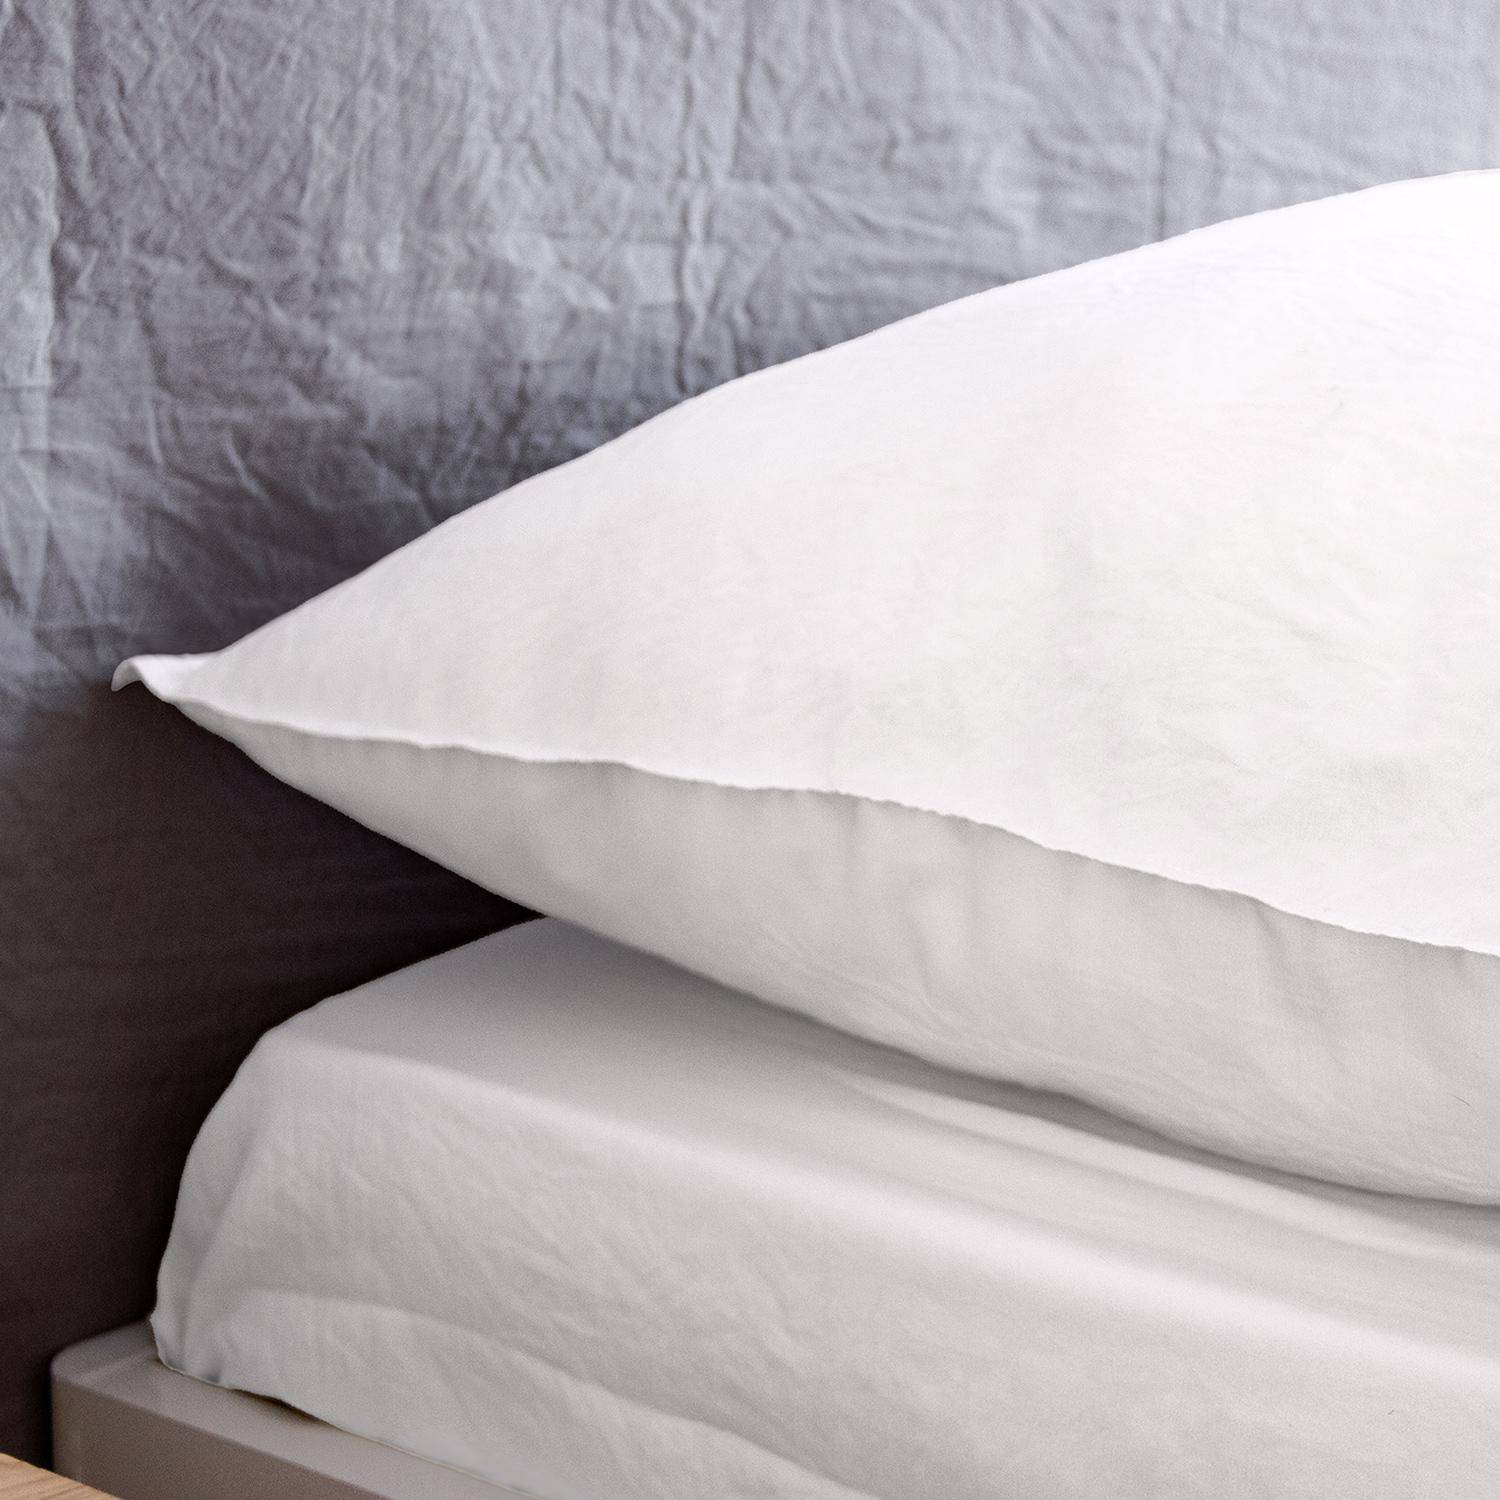 Bettwäsche-Set aus vorgewaschener Mikrofaser in weiß 260 x 240 cm für Doppelbetten, 1 Bettbezug und 2 Kissenbezüge,sweeek,Photo3